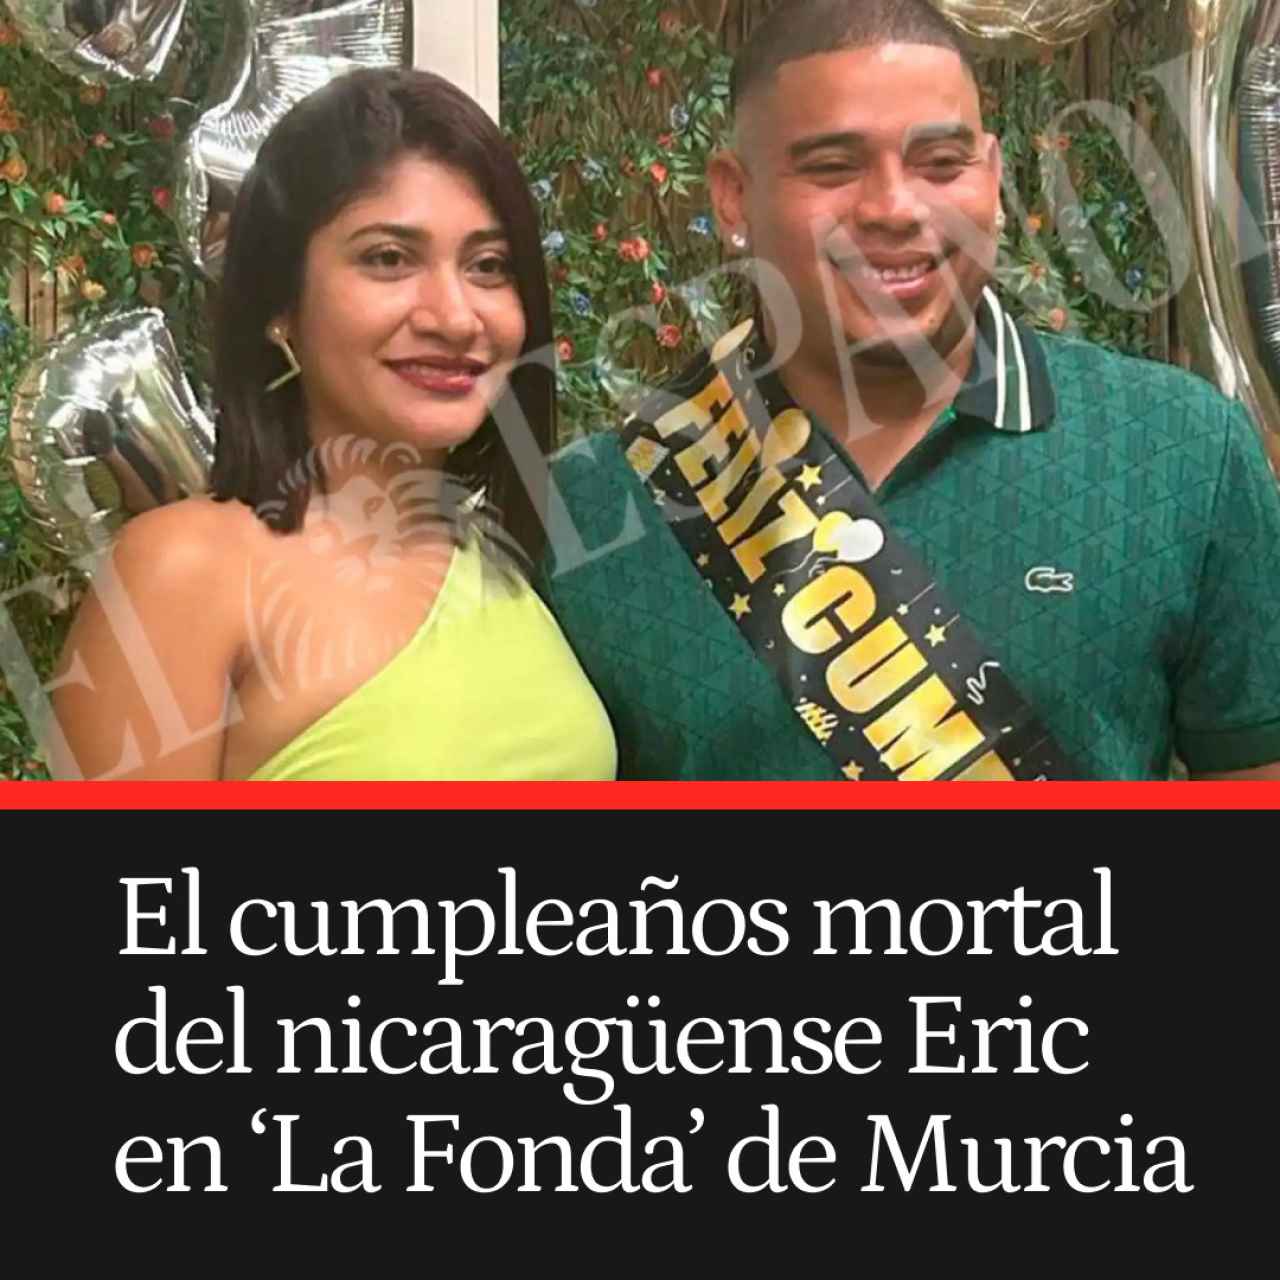 El cumpleaños mortal del nicaragüense Eric en la Fonda de Murcia: "Estamos destrozados"